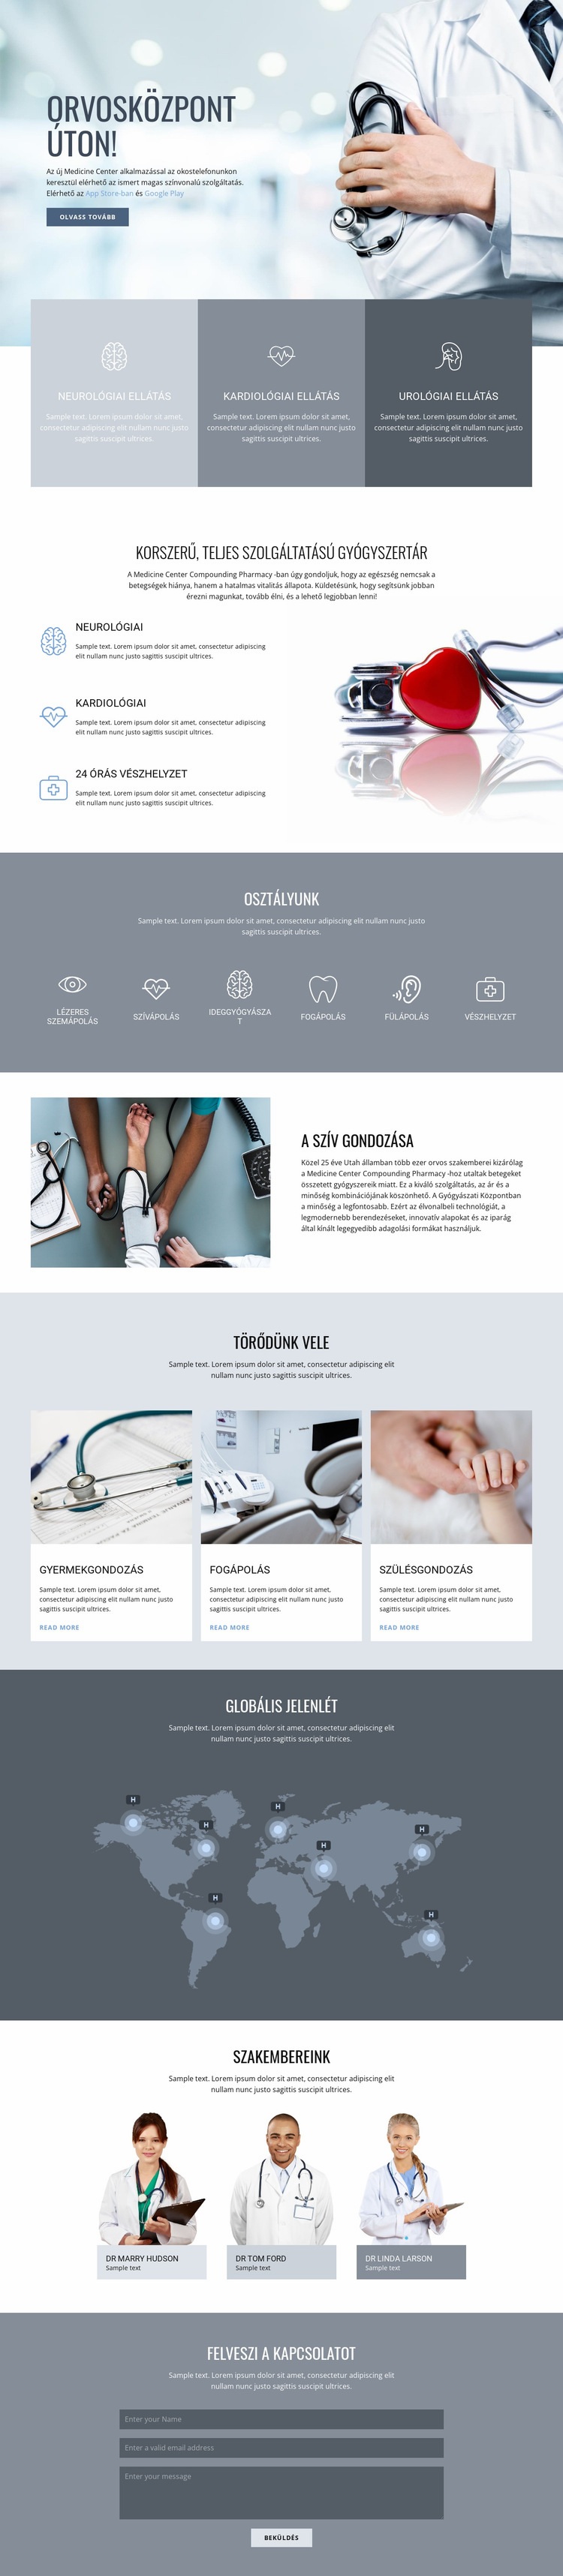 Minőségi orvostudományi központ Weboldal tervezés